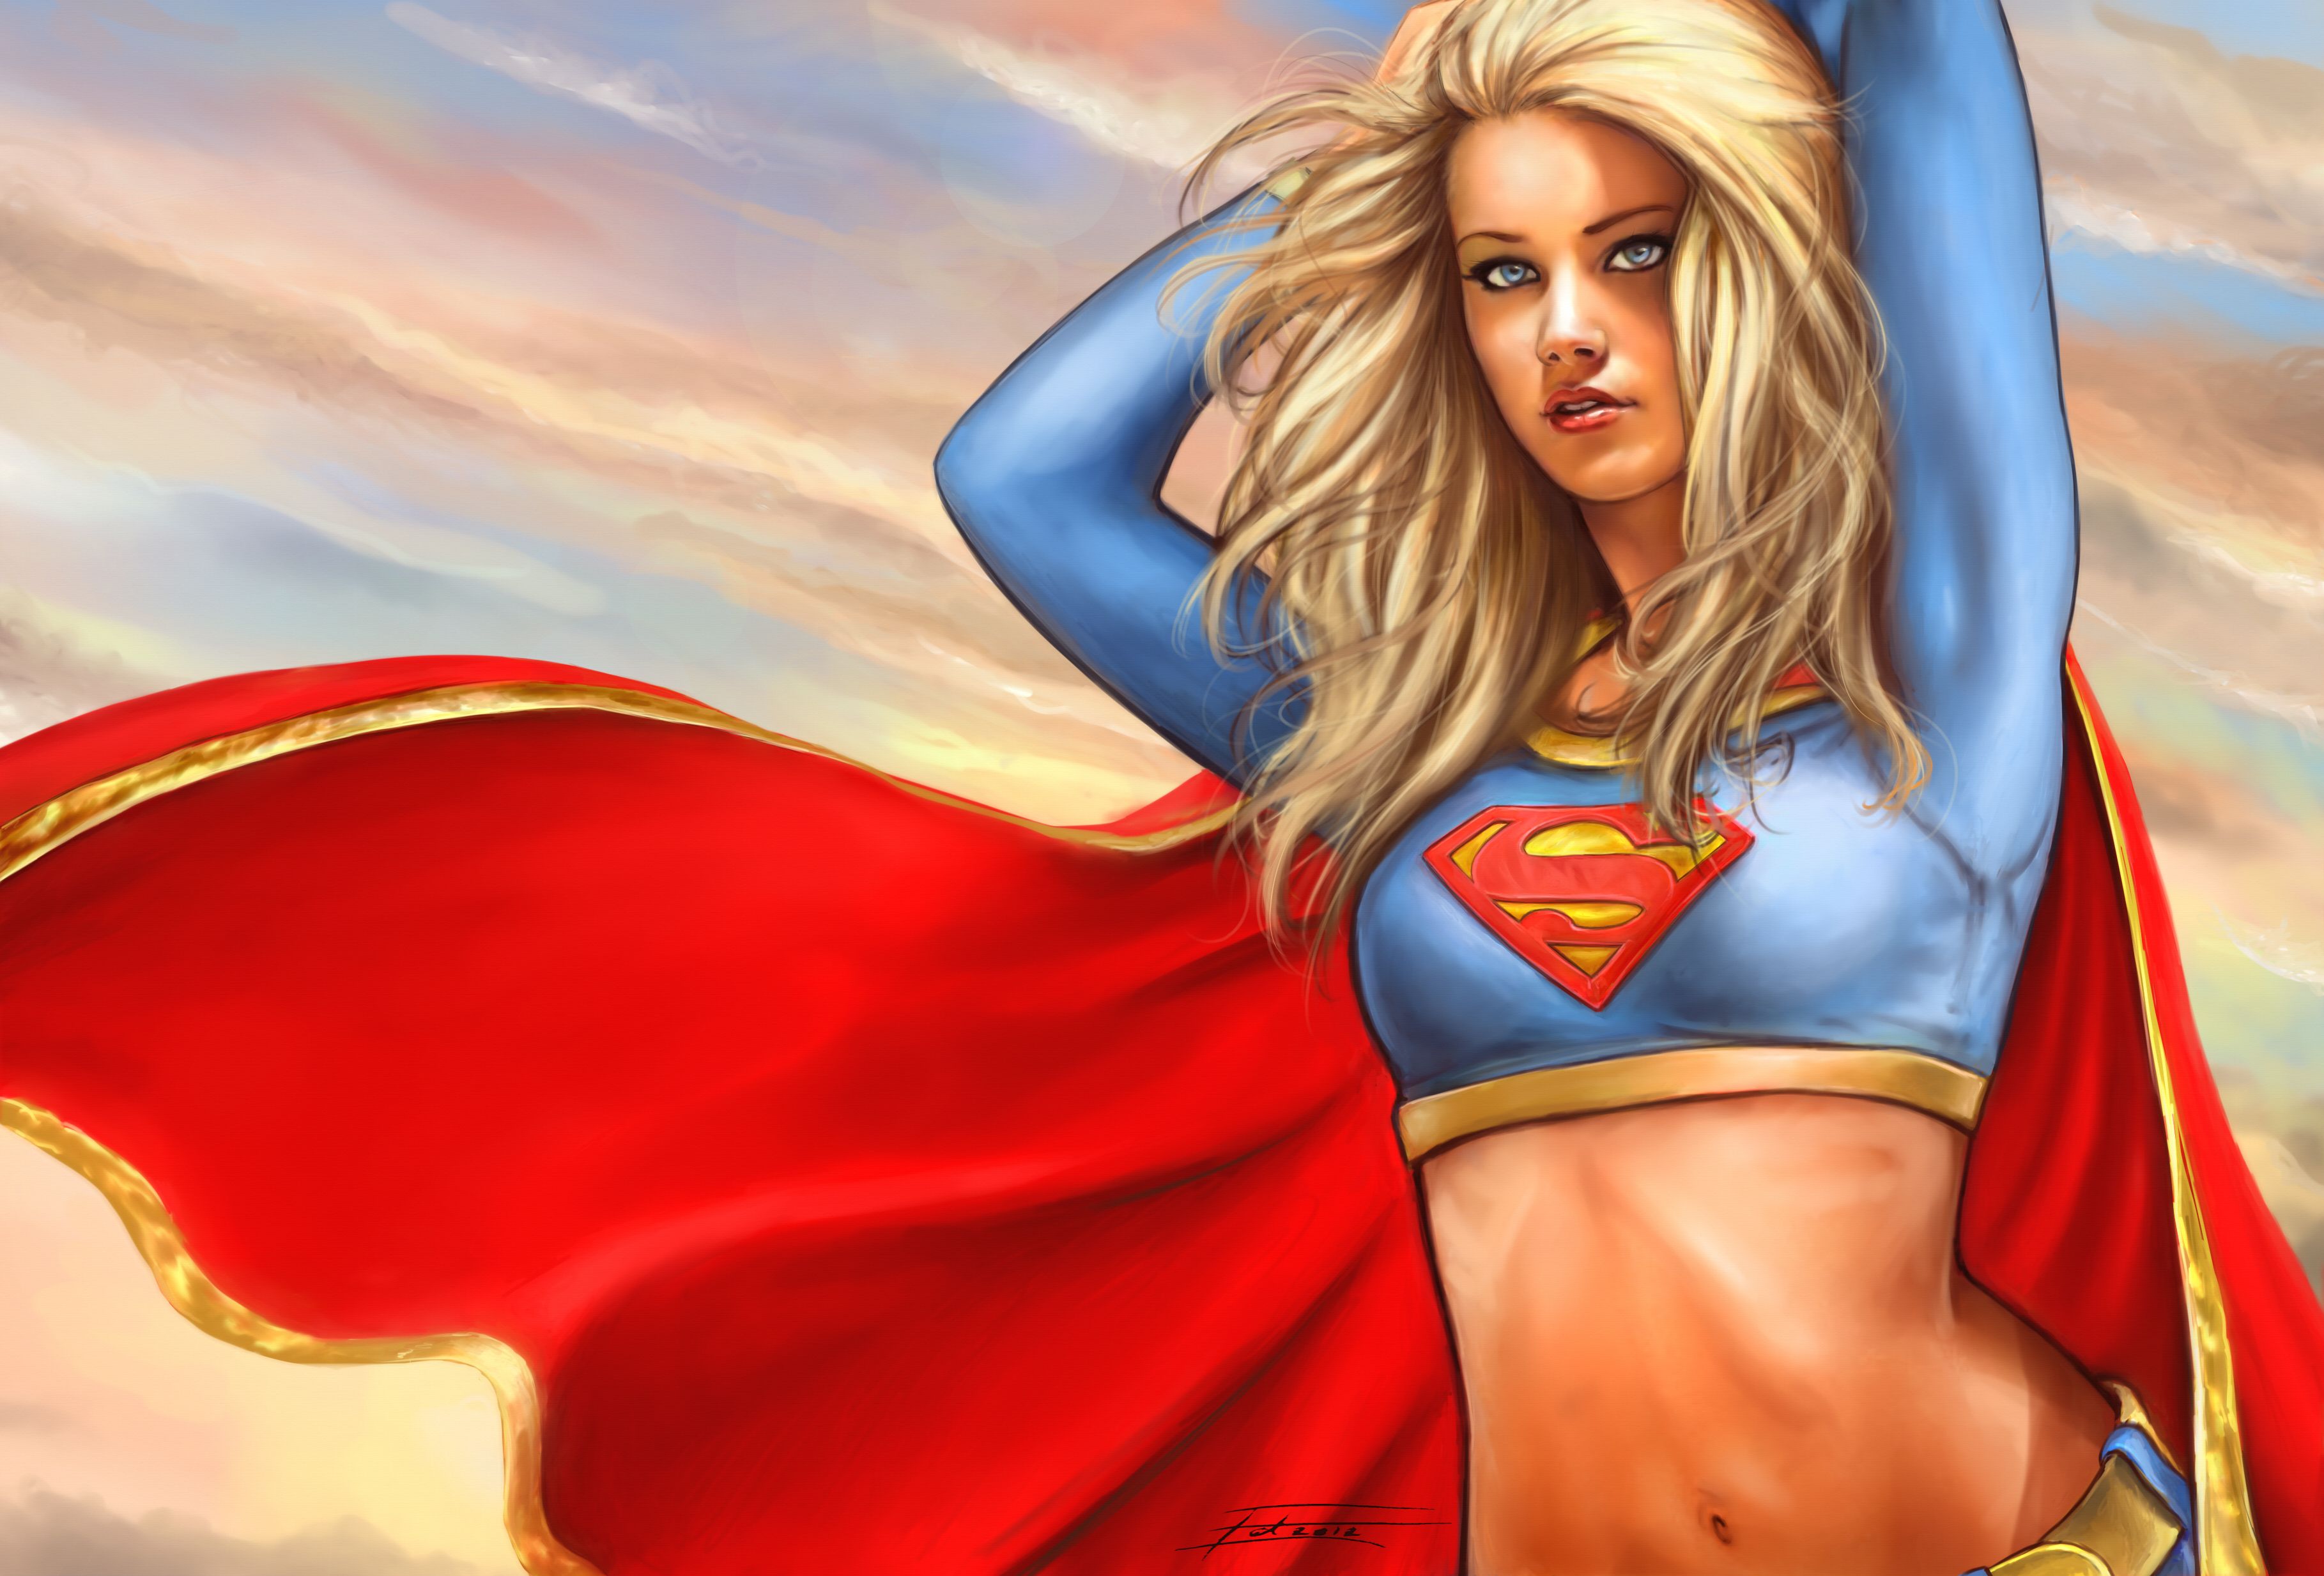 heroes, Comics, Supergirl, Blonde, Girl, Fantasy, Superhero, Supergirl, Superwoman Wallpaper